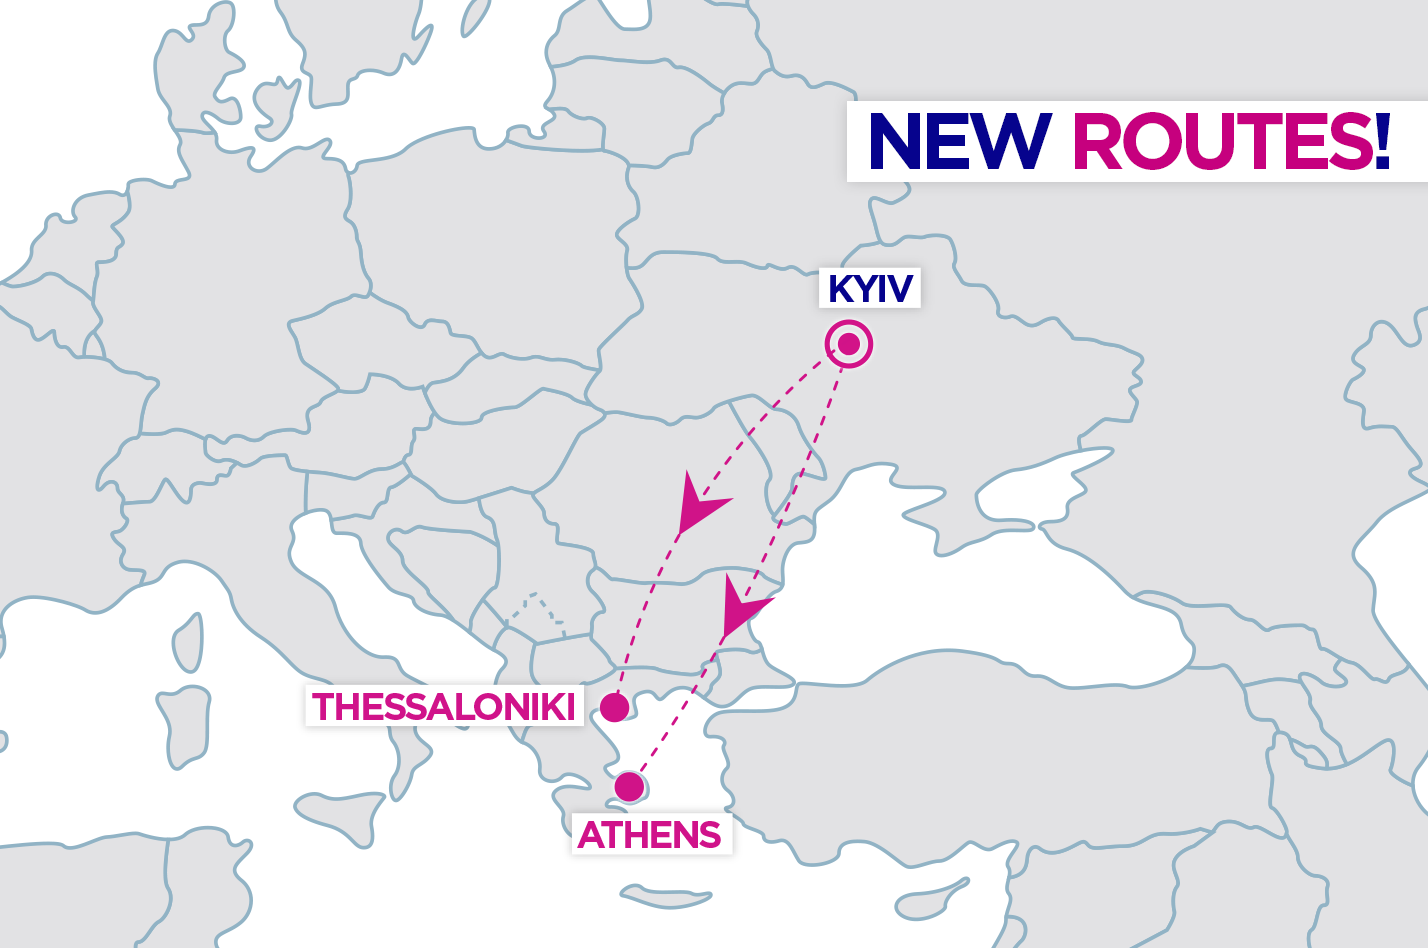 Новые регулярные рейсы в Грецию авиакомпания начнет выполнять в мае 2019 года. Фото: facebook.com/wizzaircom